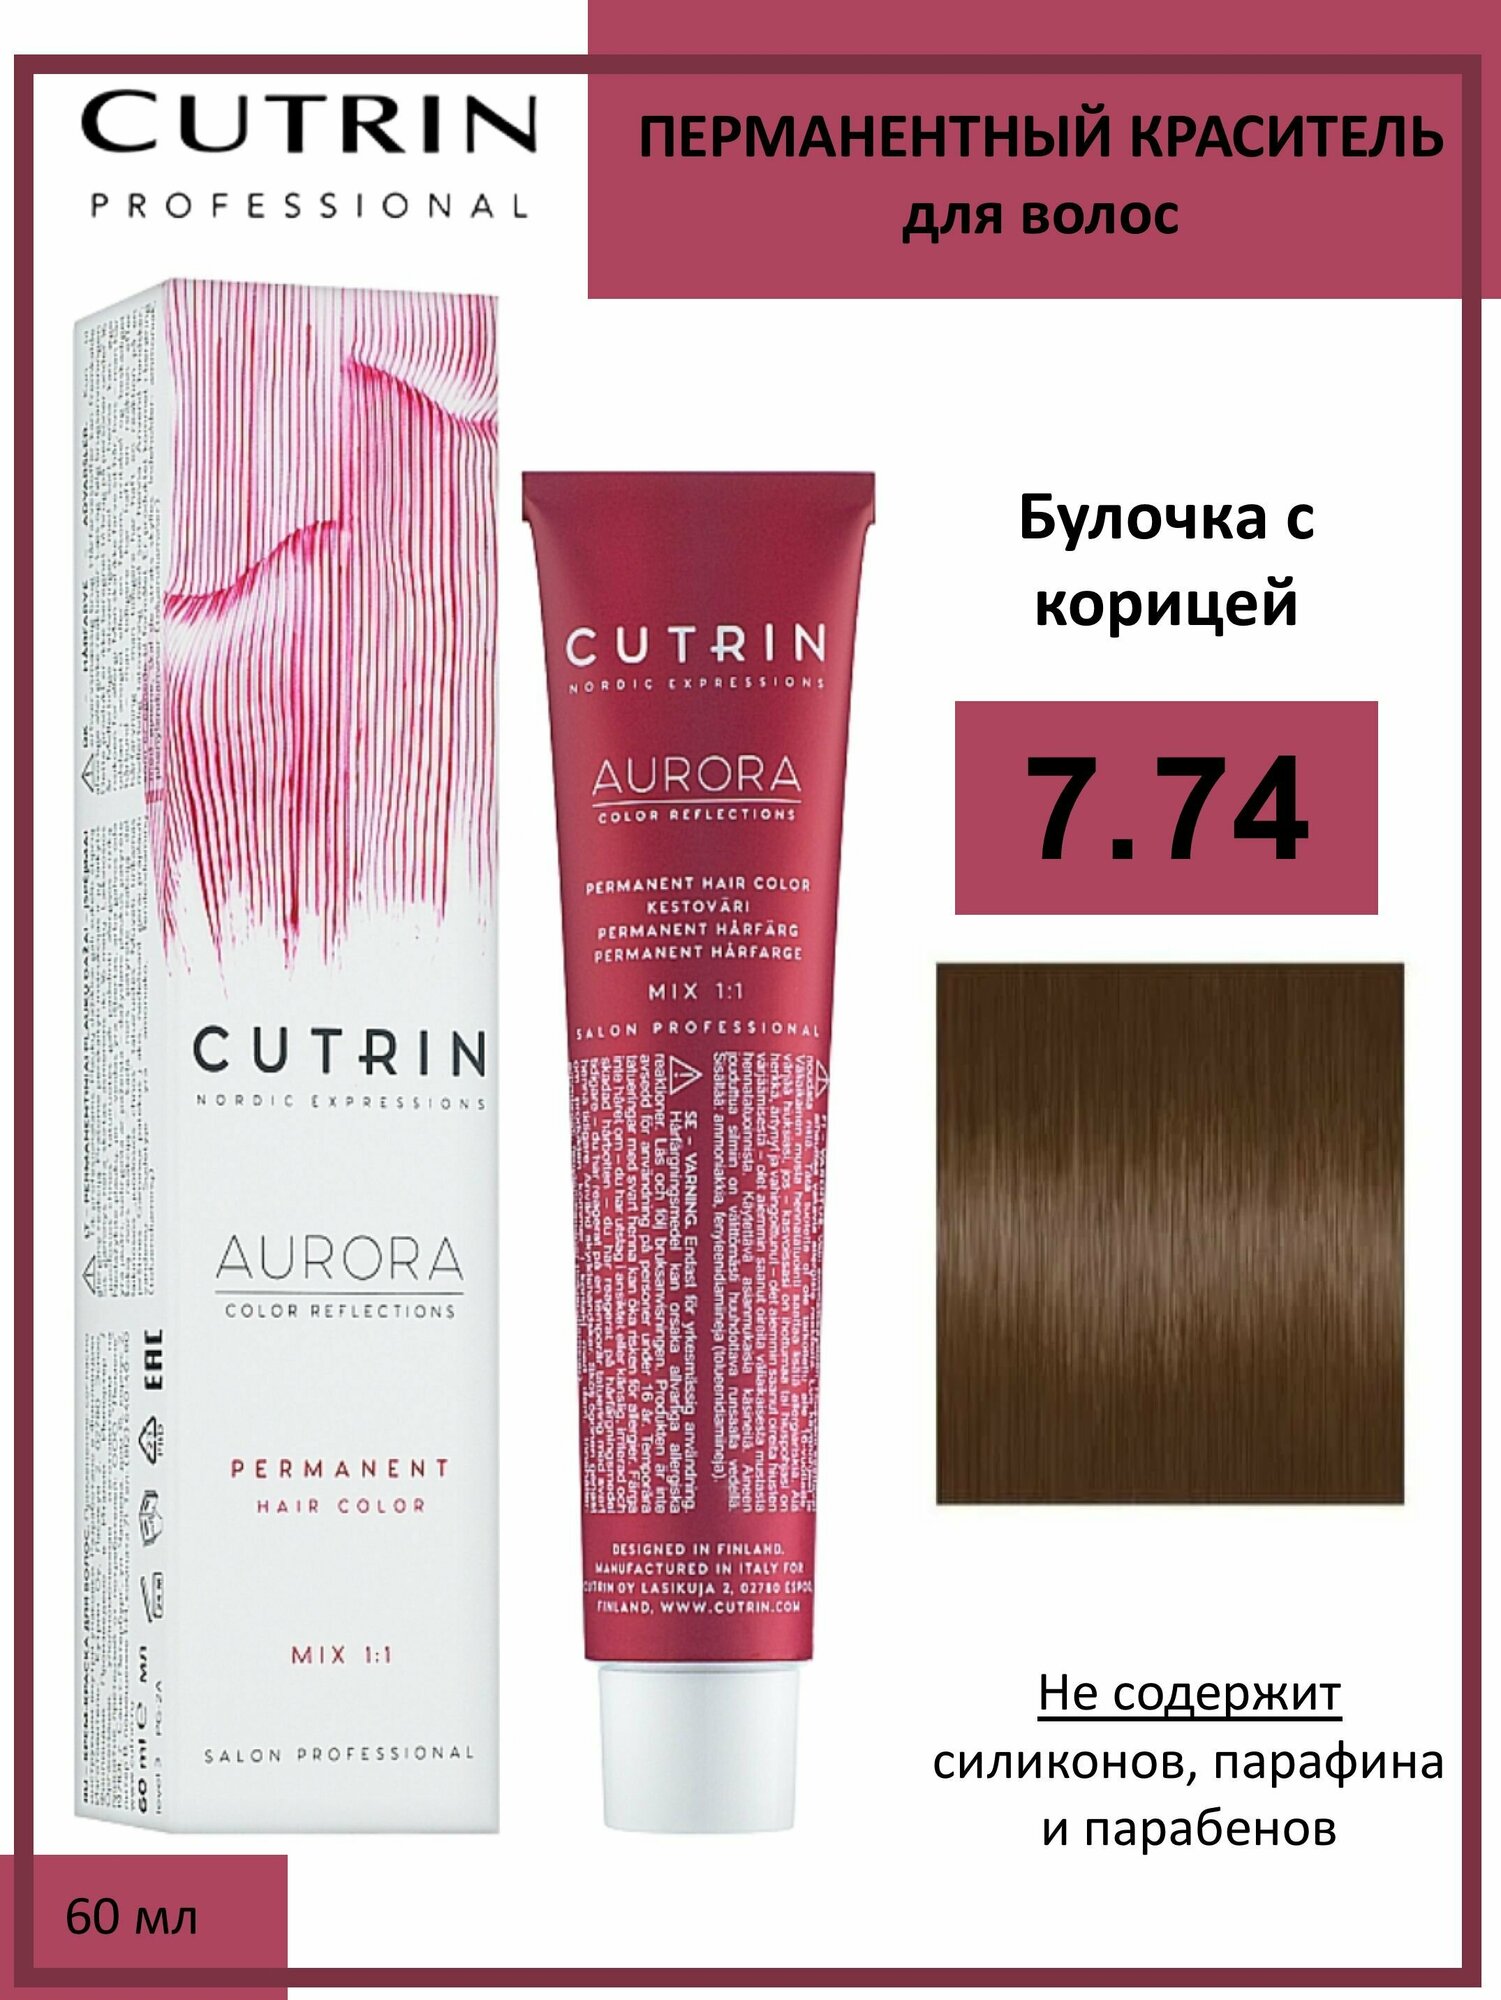 Cutrin Aurora крем-краска для волос 7/74 Булочка с корицей 60мл